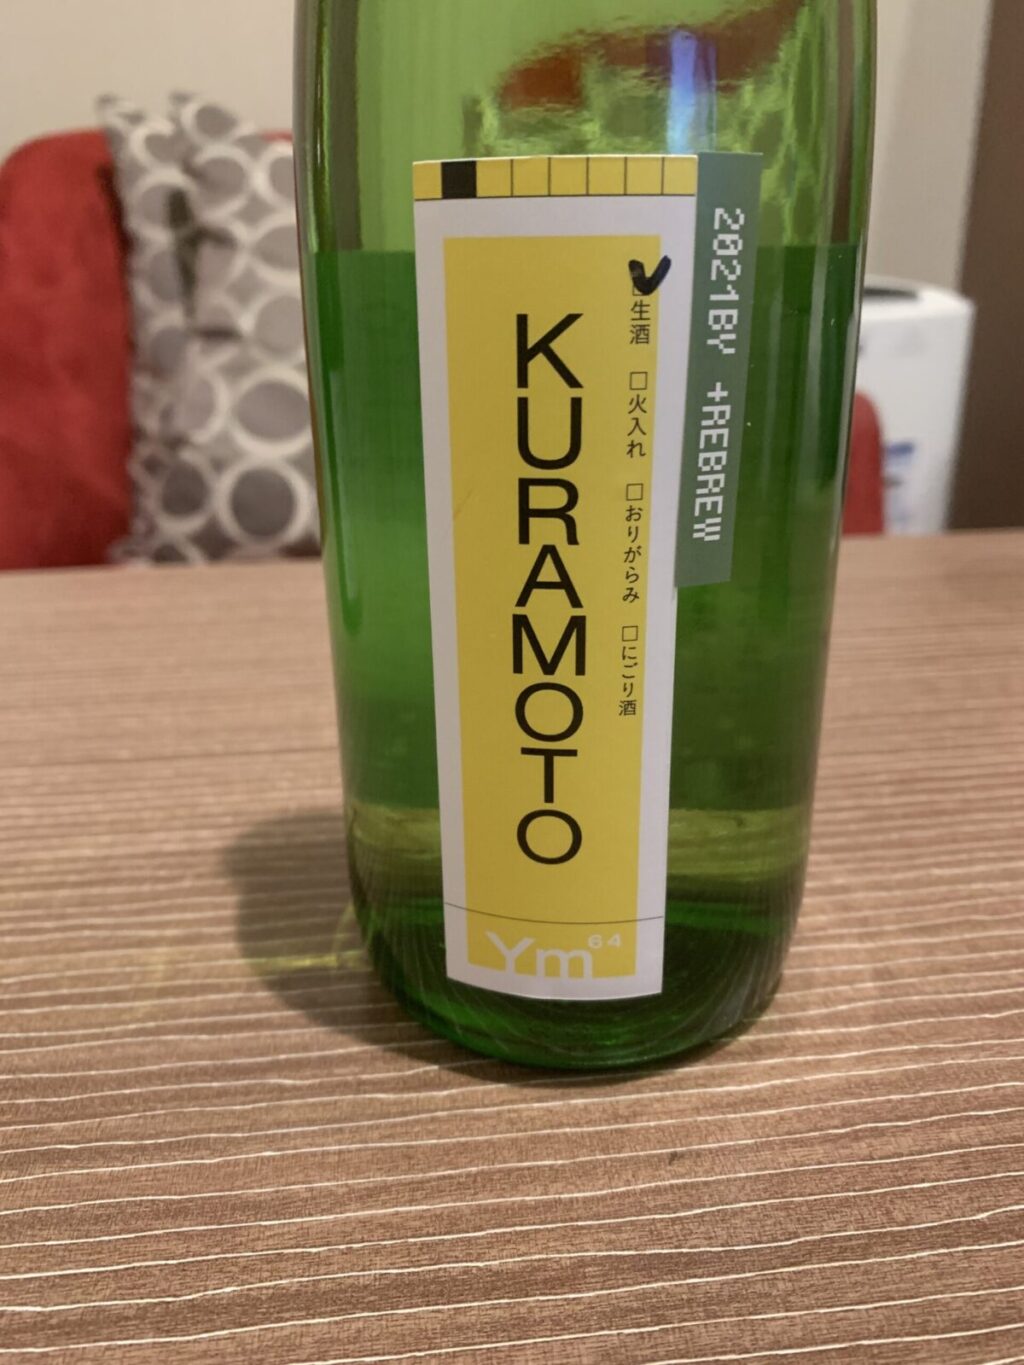 奈良の『KURAMOTO ym64+REBREW』はリッチな味